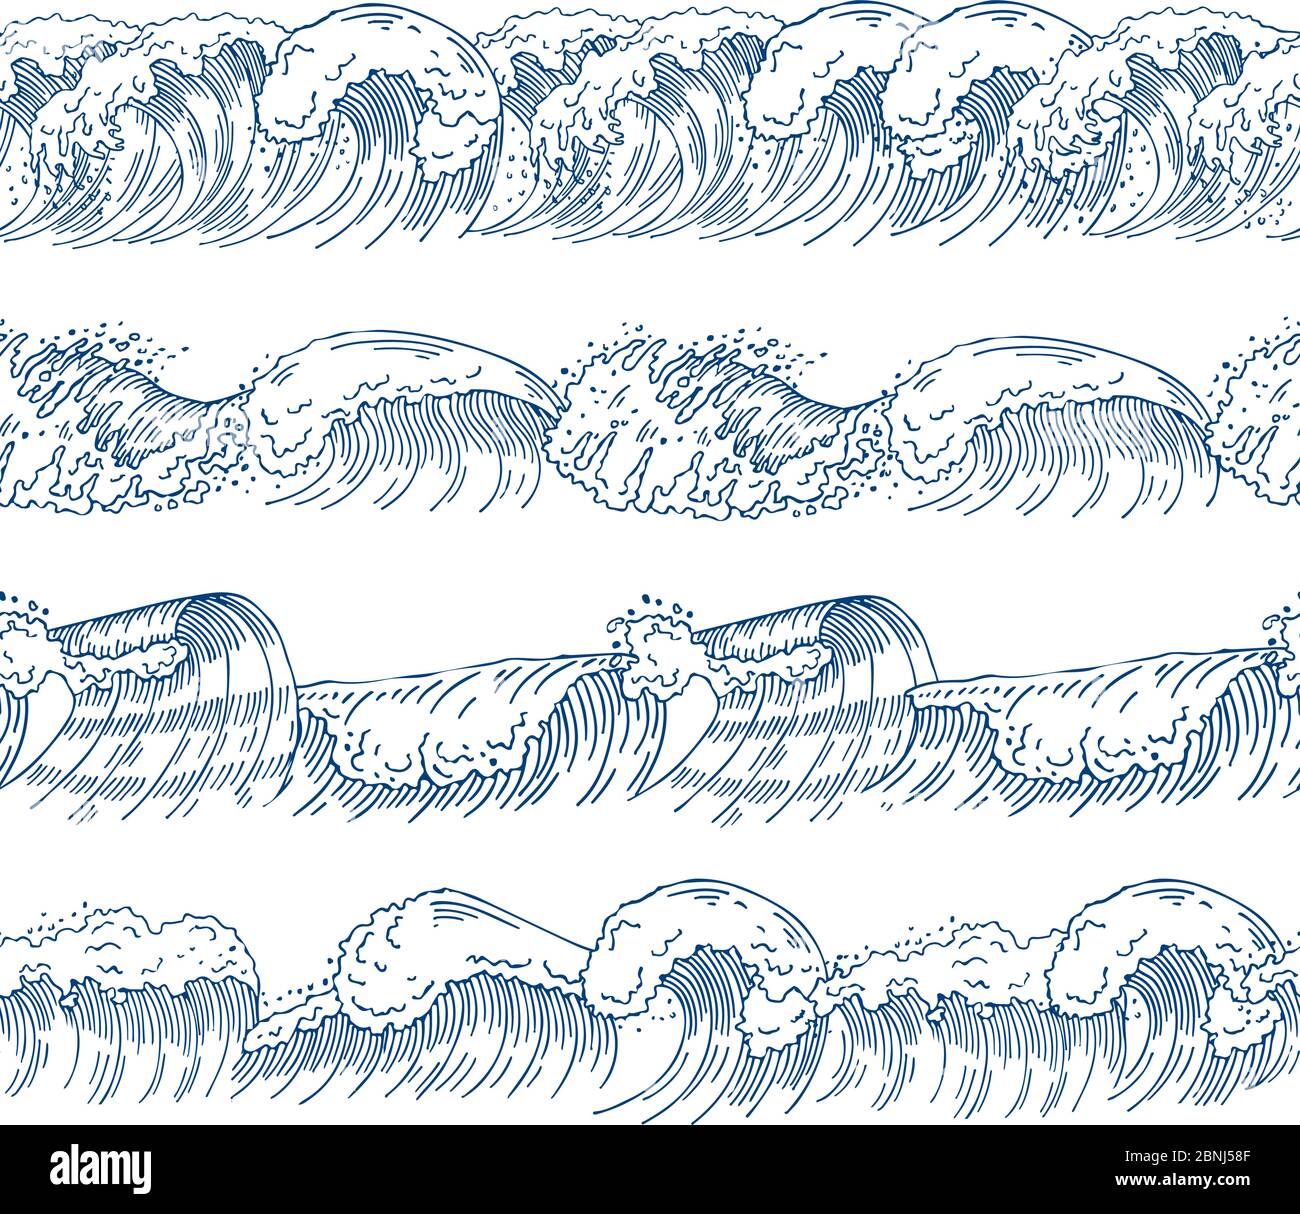 Horizontale nahtlose Muster mit verschiedenen Wellen des Ozeans. Handgezeichnete Bilder gesetzt Stock Vektor